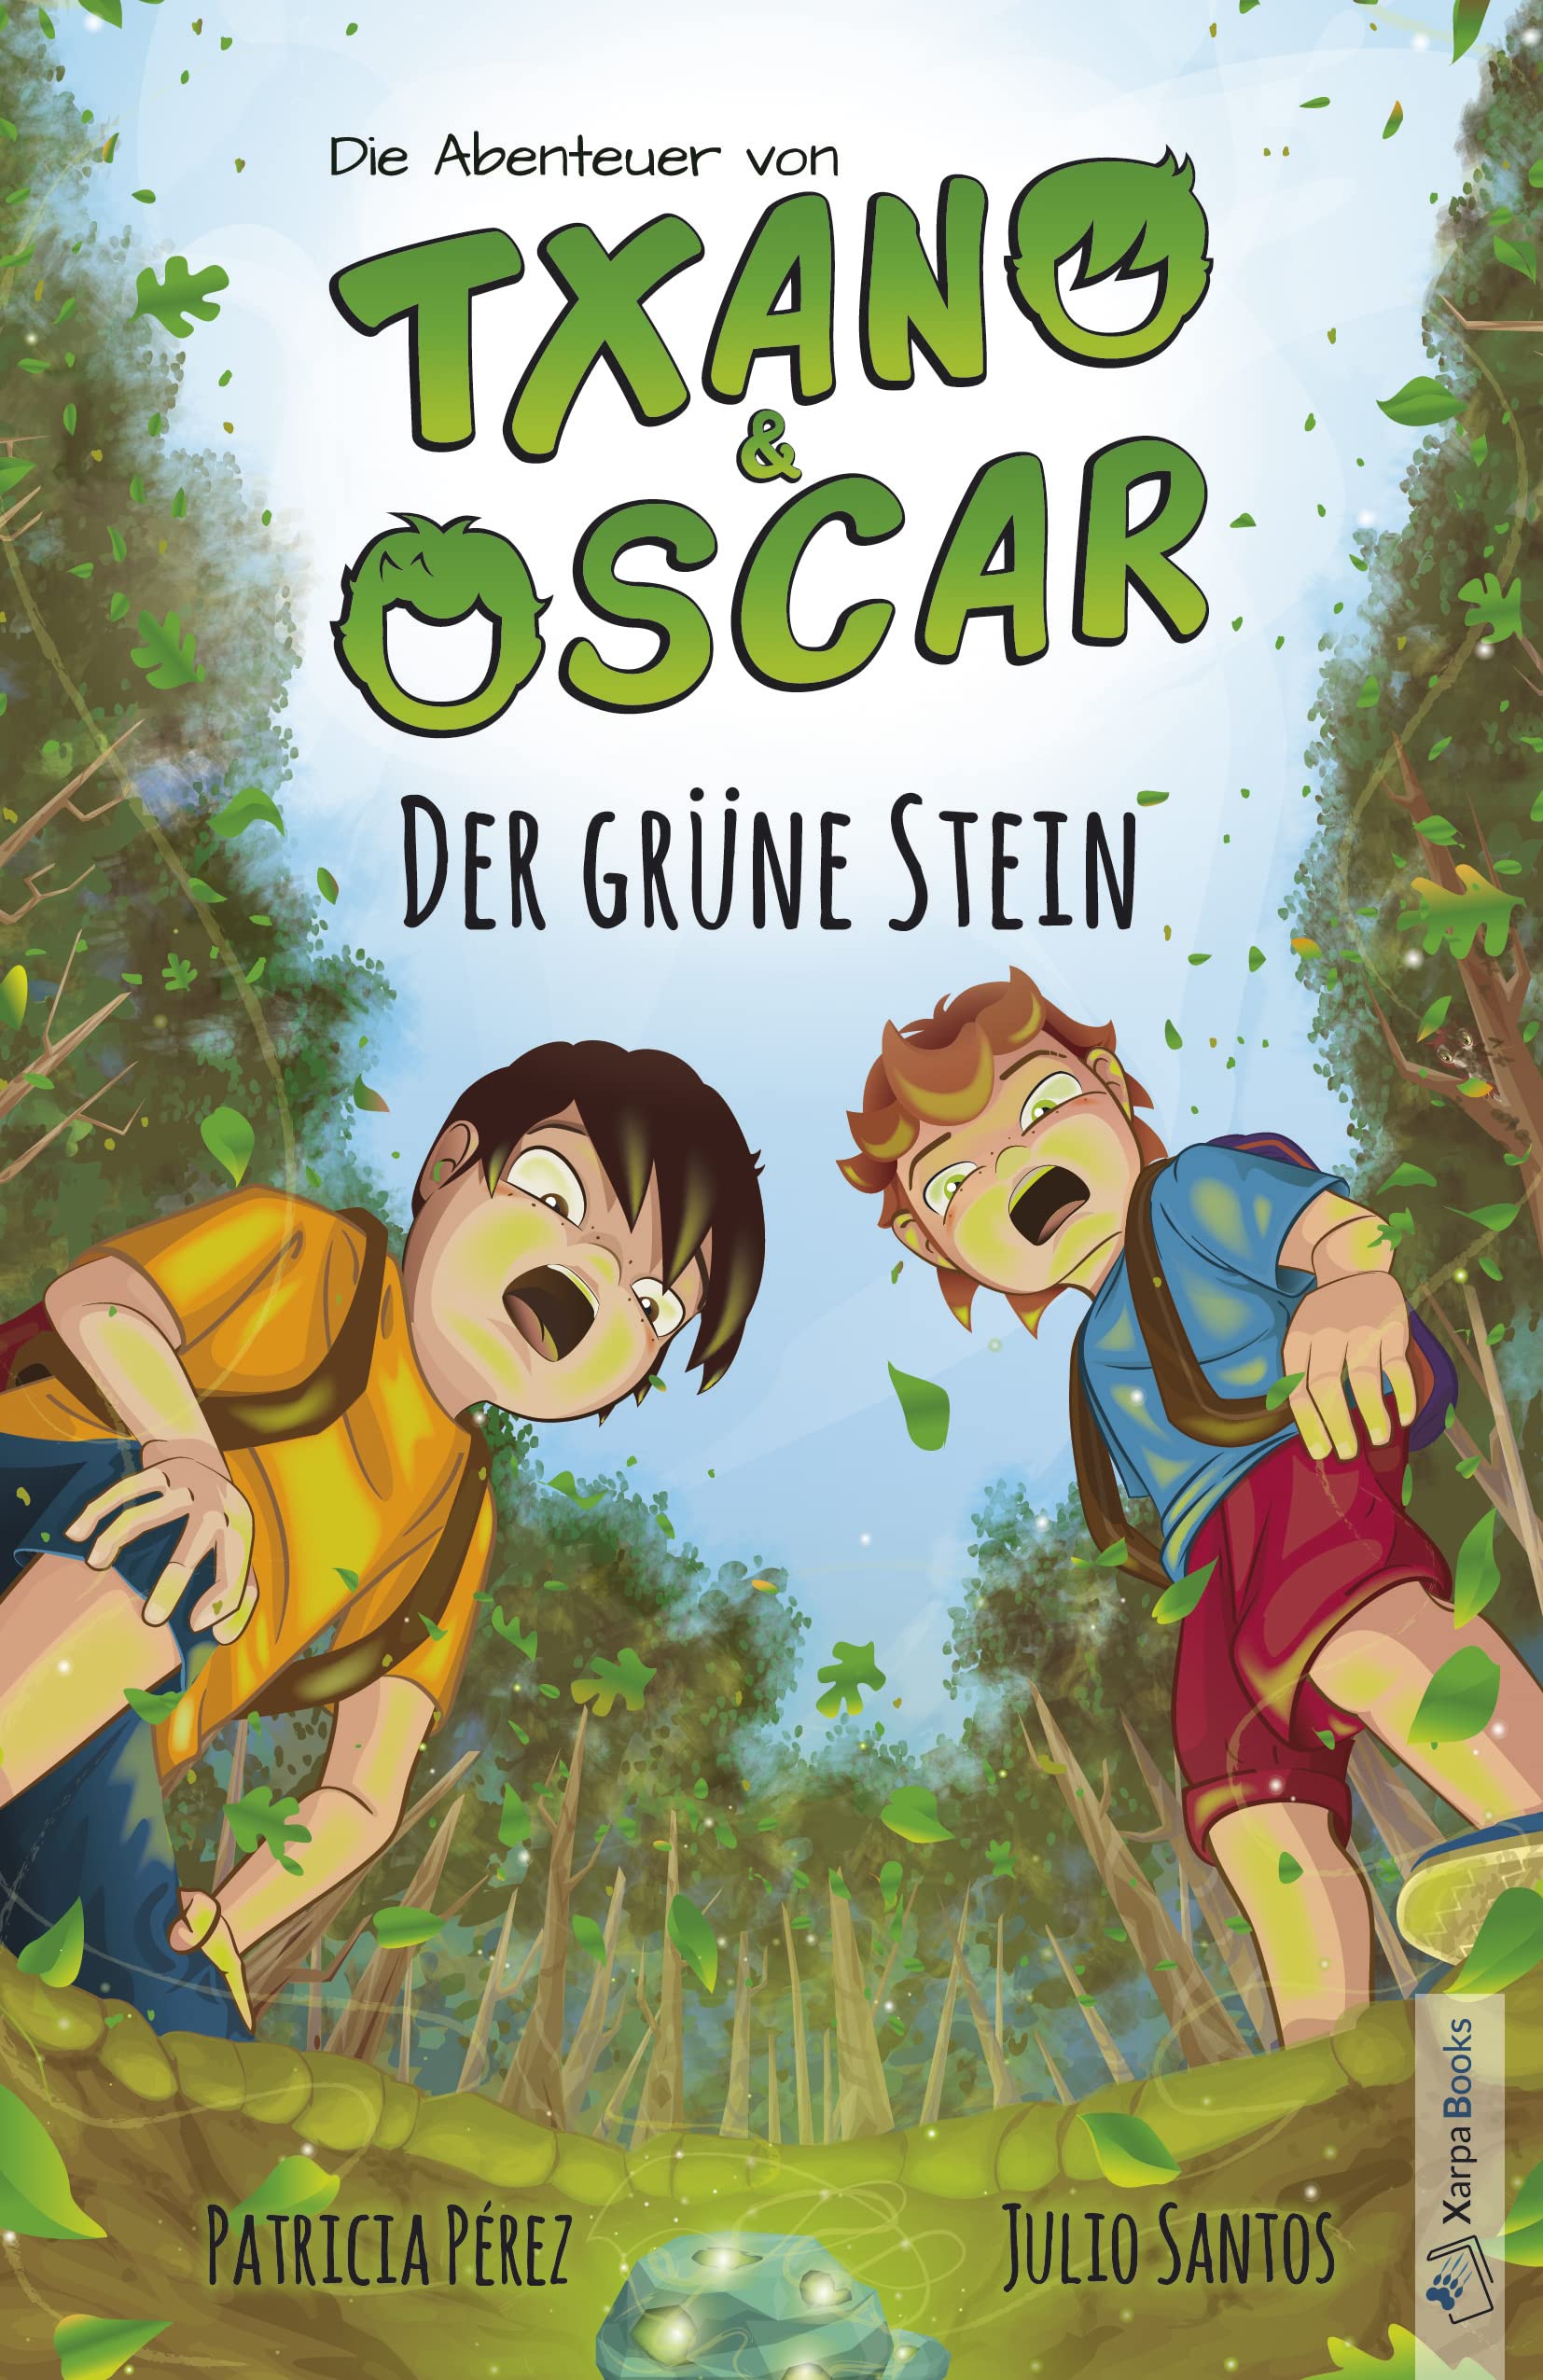 Txano und Oscar 1 - Der grüne Stein: Kinderbuch mit Mystery und Abenteuer (7 - 12 Jahre) (Die Abenteuer von Txano und Oscar) (German Edition)